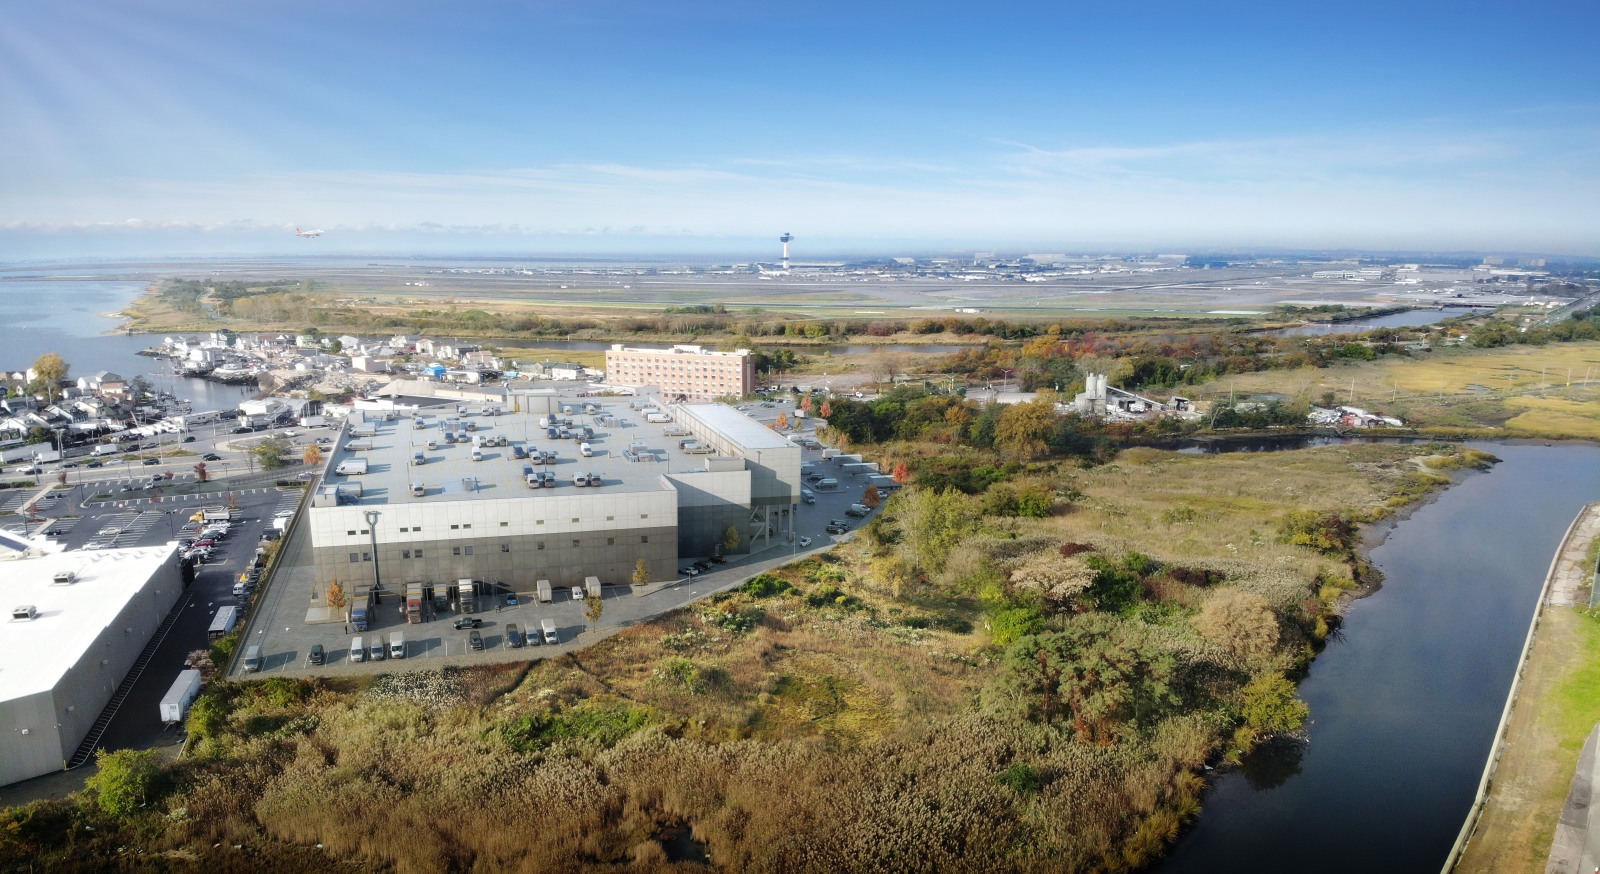 Aerial Image of JFK Logistics Center